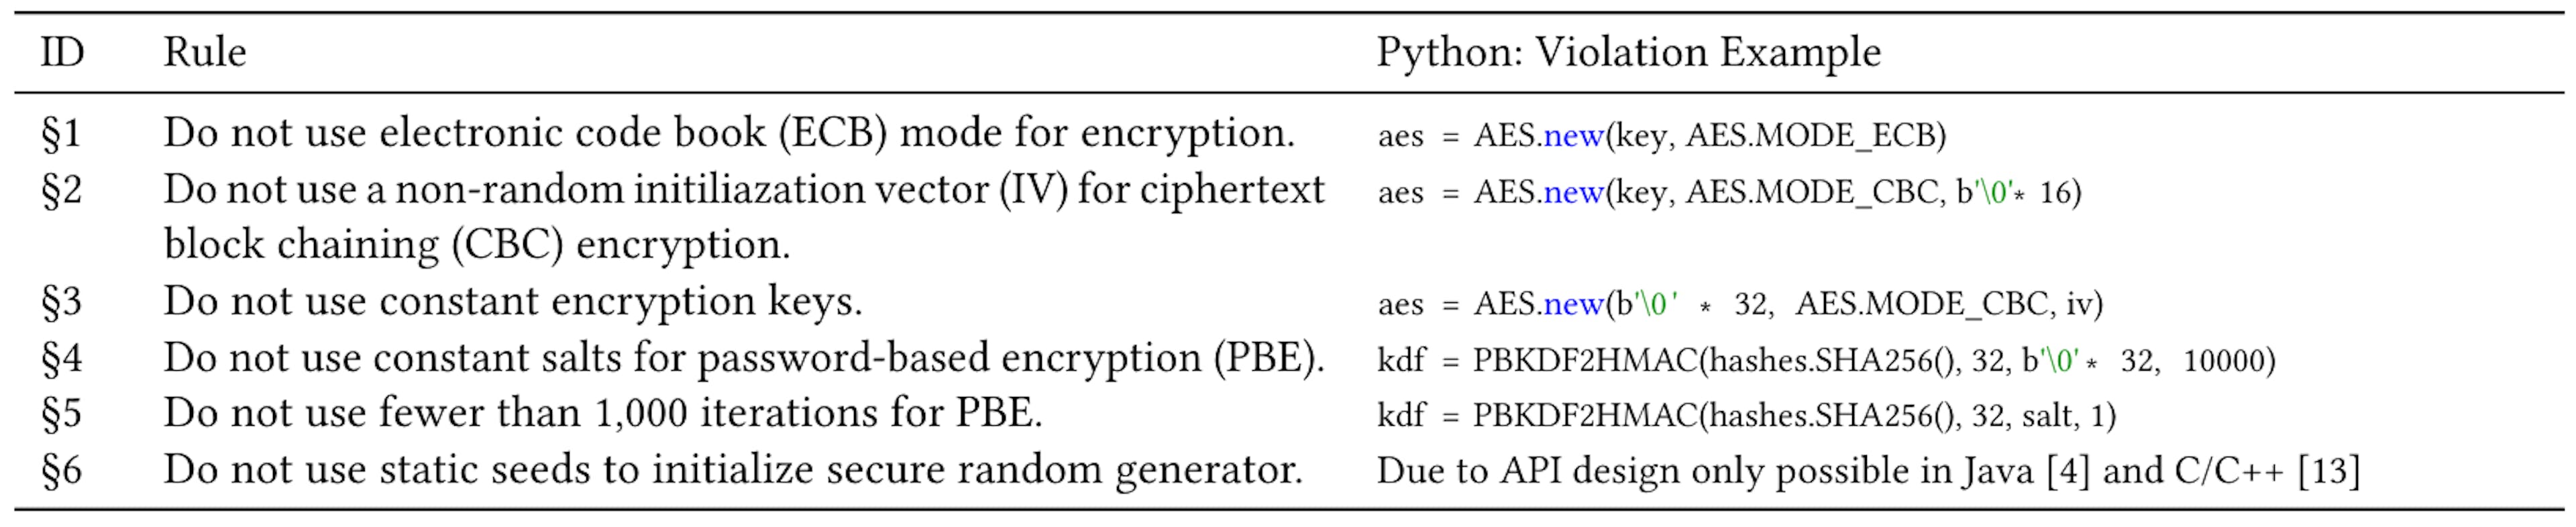 Tabelle 1: Sechs häufig diskutierte Krypto-Missbräuche in Java und C [4, 13] mit einem Beispiel eines Verstoßes in Python.